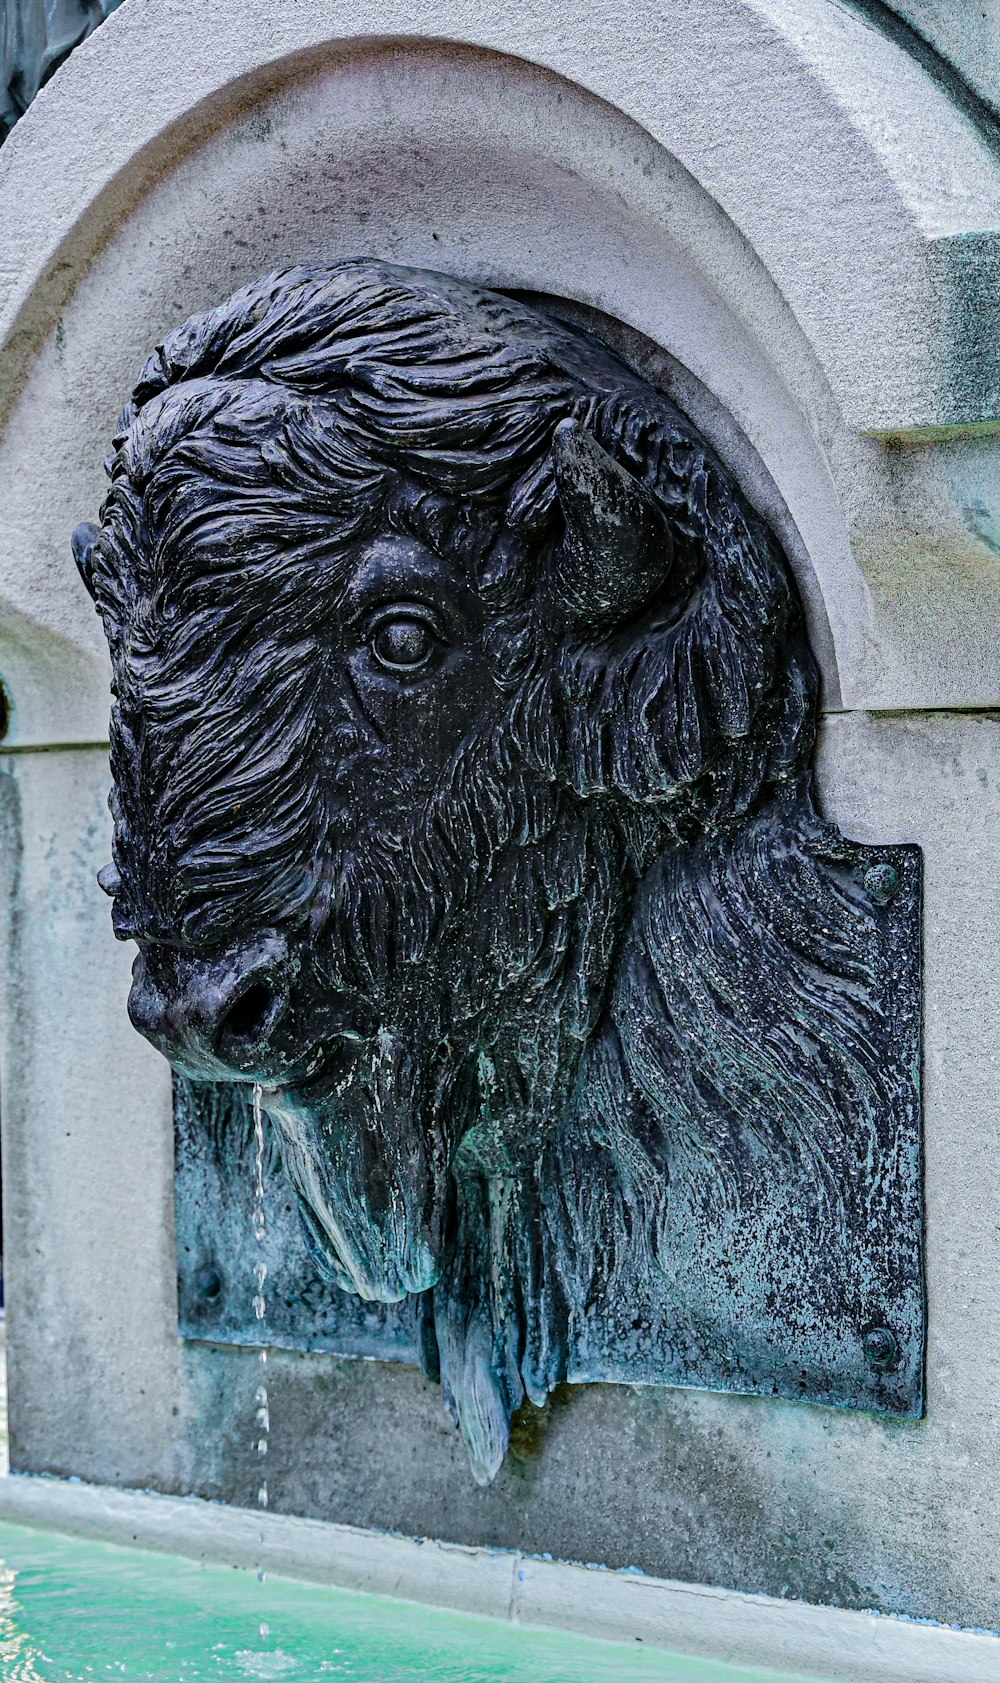 a stone sculpture of a lion